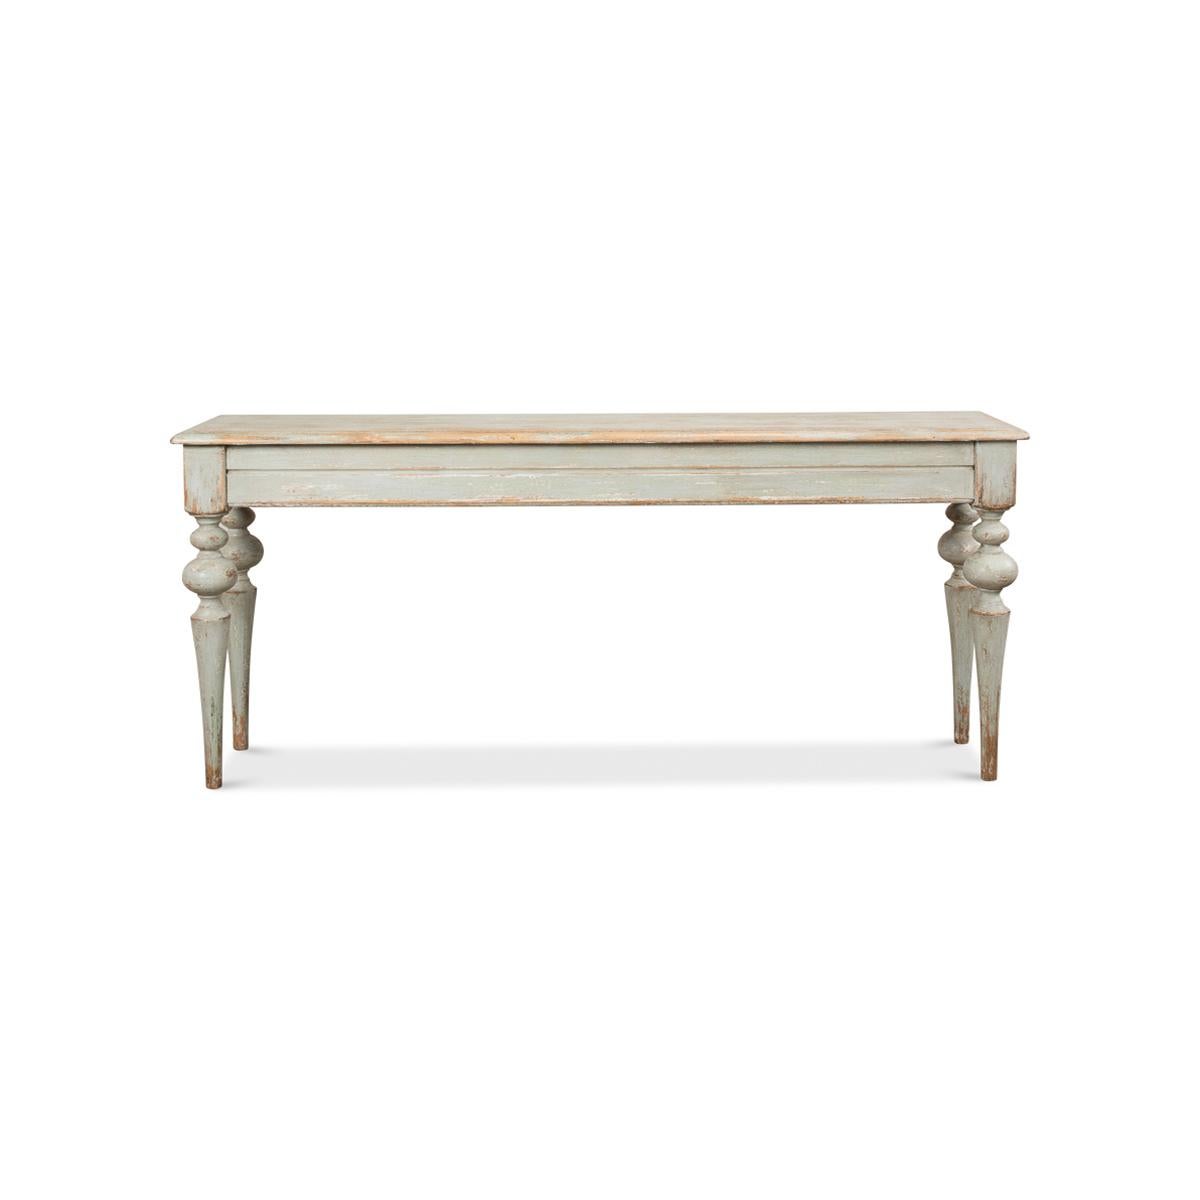 Voici la charmante table console provinciale rustique en pin sauge, un meuble magnifiquement fabriqué qui respire la sophistication et l'élégance rustique. Finition en vert sauge peint en antiquité rustique. Son plateau à bord moulé est une